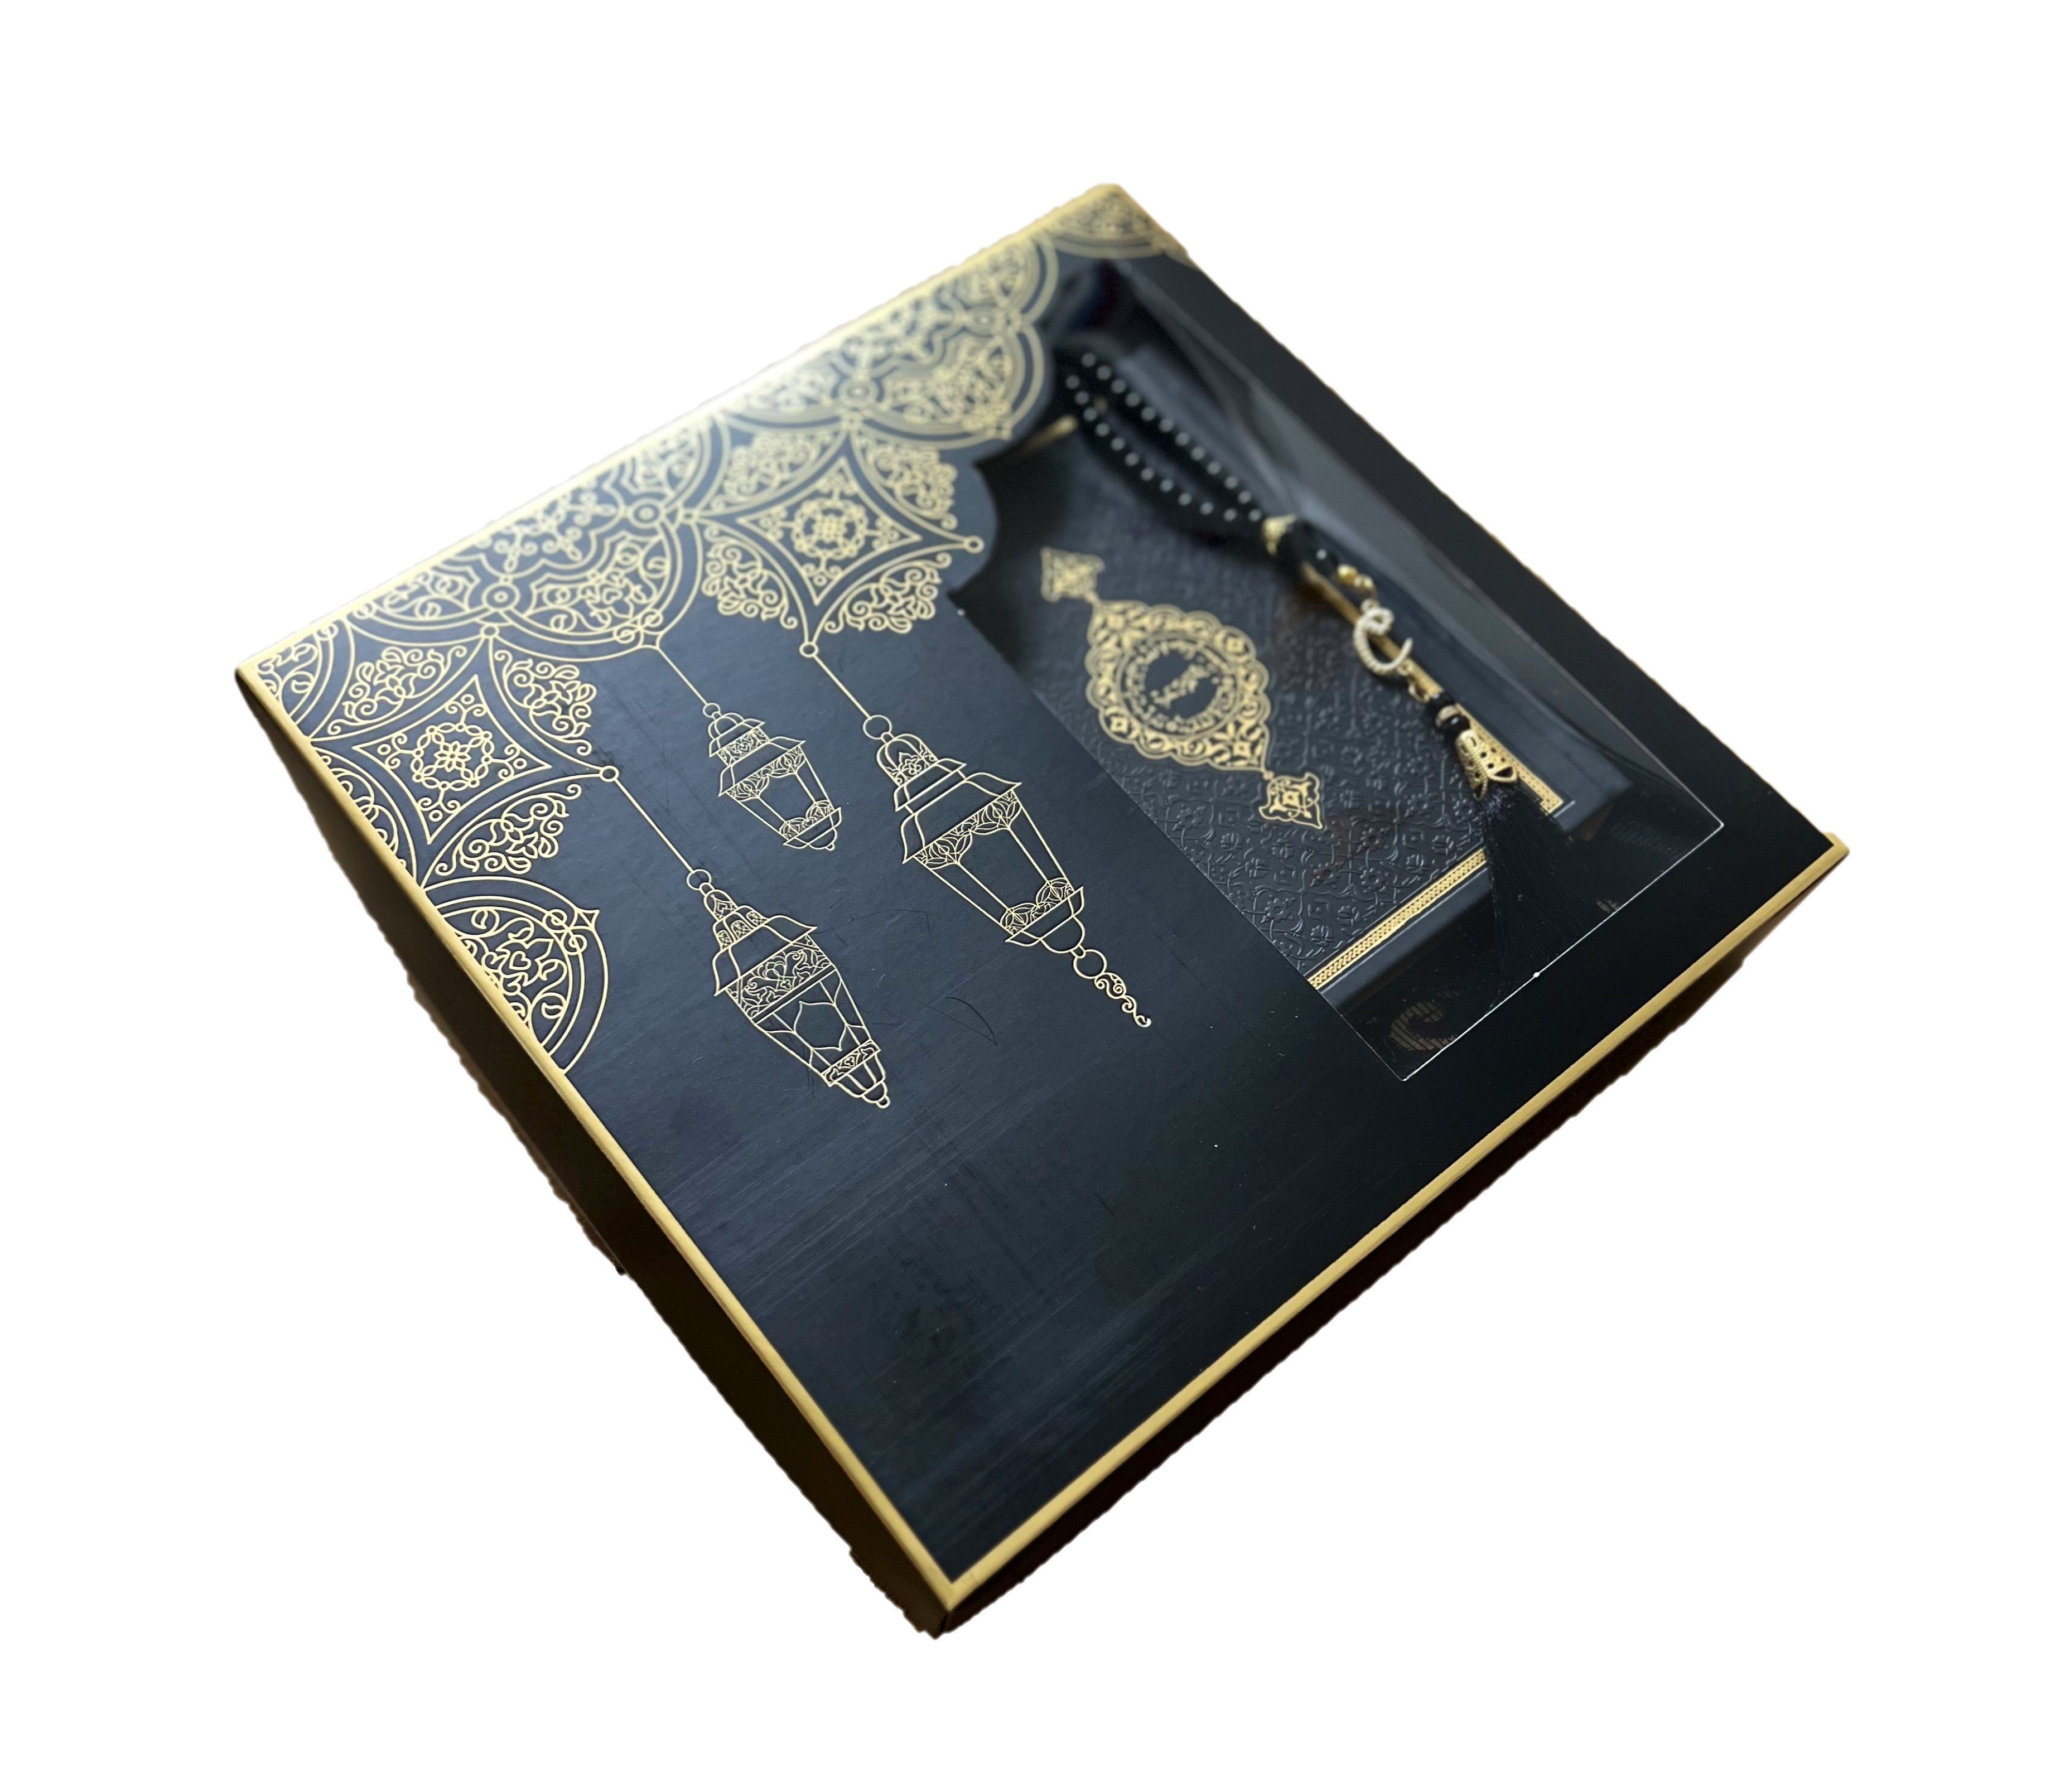 Orientteppich Gebetsteppich schwarz weiß gold + Koran + tasbih Islam Muslim Allah, Lale Collection®, Gebetsteppich, Leicht, dünn, Islam, Sejjada, Muslim, seccade